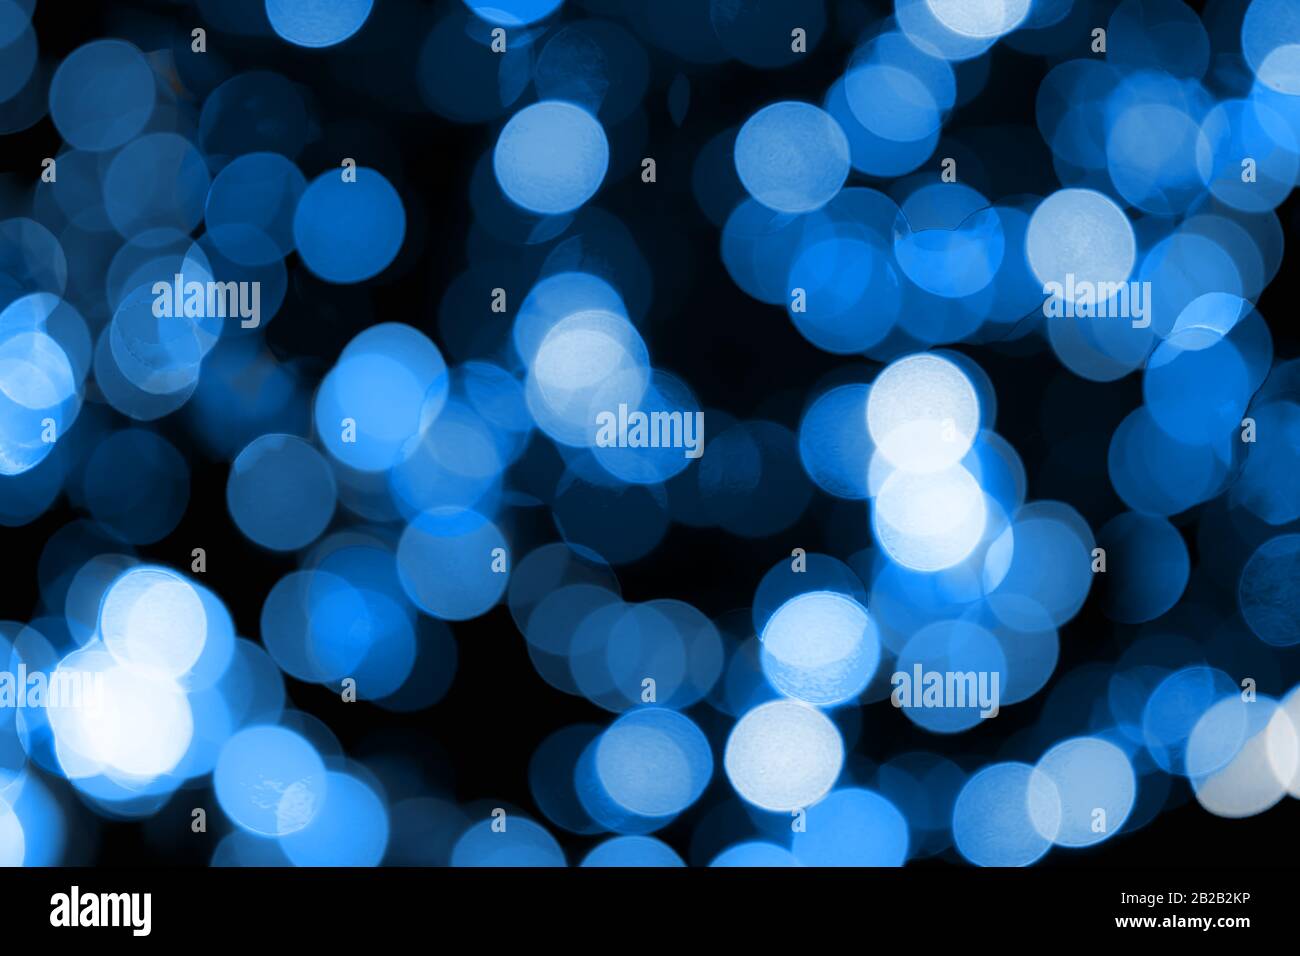 Lumières bleues floues avec réglage des couleurs pour s'adapter à Pantone 19-4052 Bleu classique, couleur de l'année 2020. Couleur Pantone de l'année 2020. Résumé. Banque D'Images